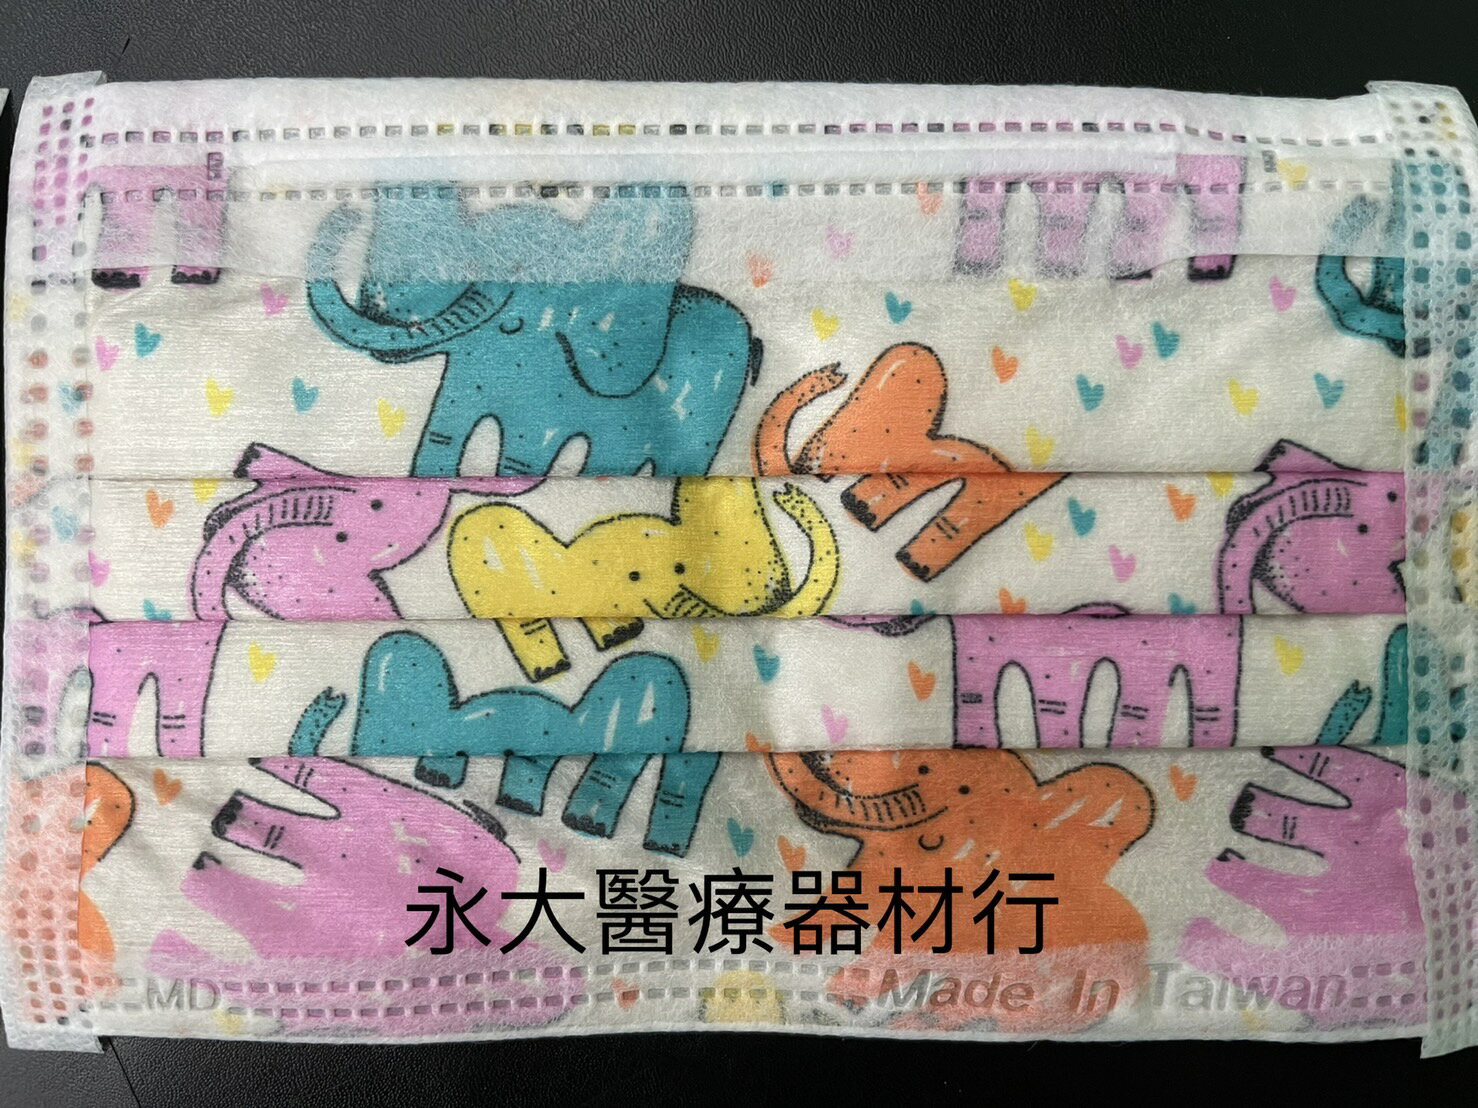 永大醫療~尚進兒童醫用口罩(未滅菌)(浣熊/大象/貓)~每盒50入~200元~